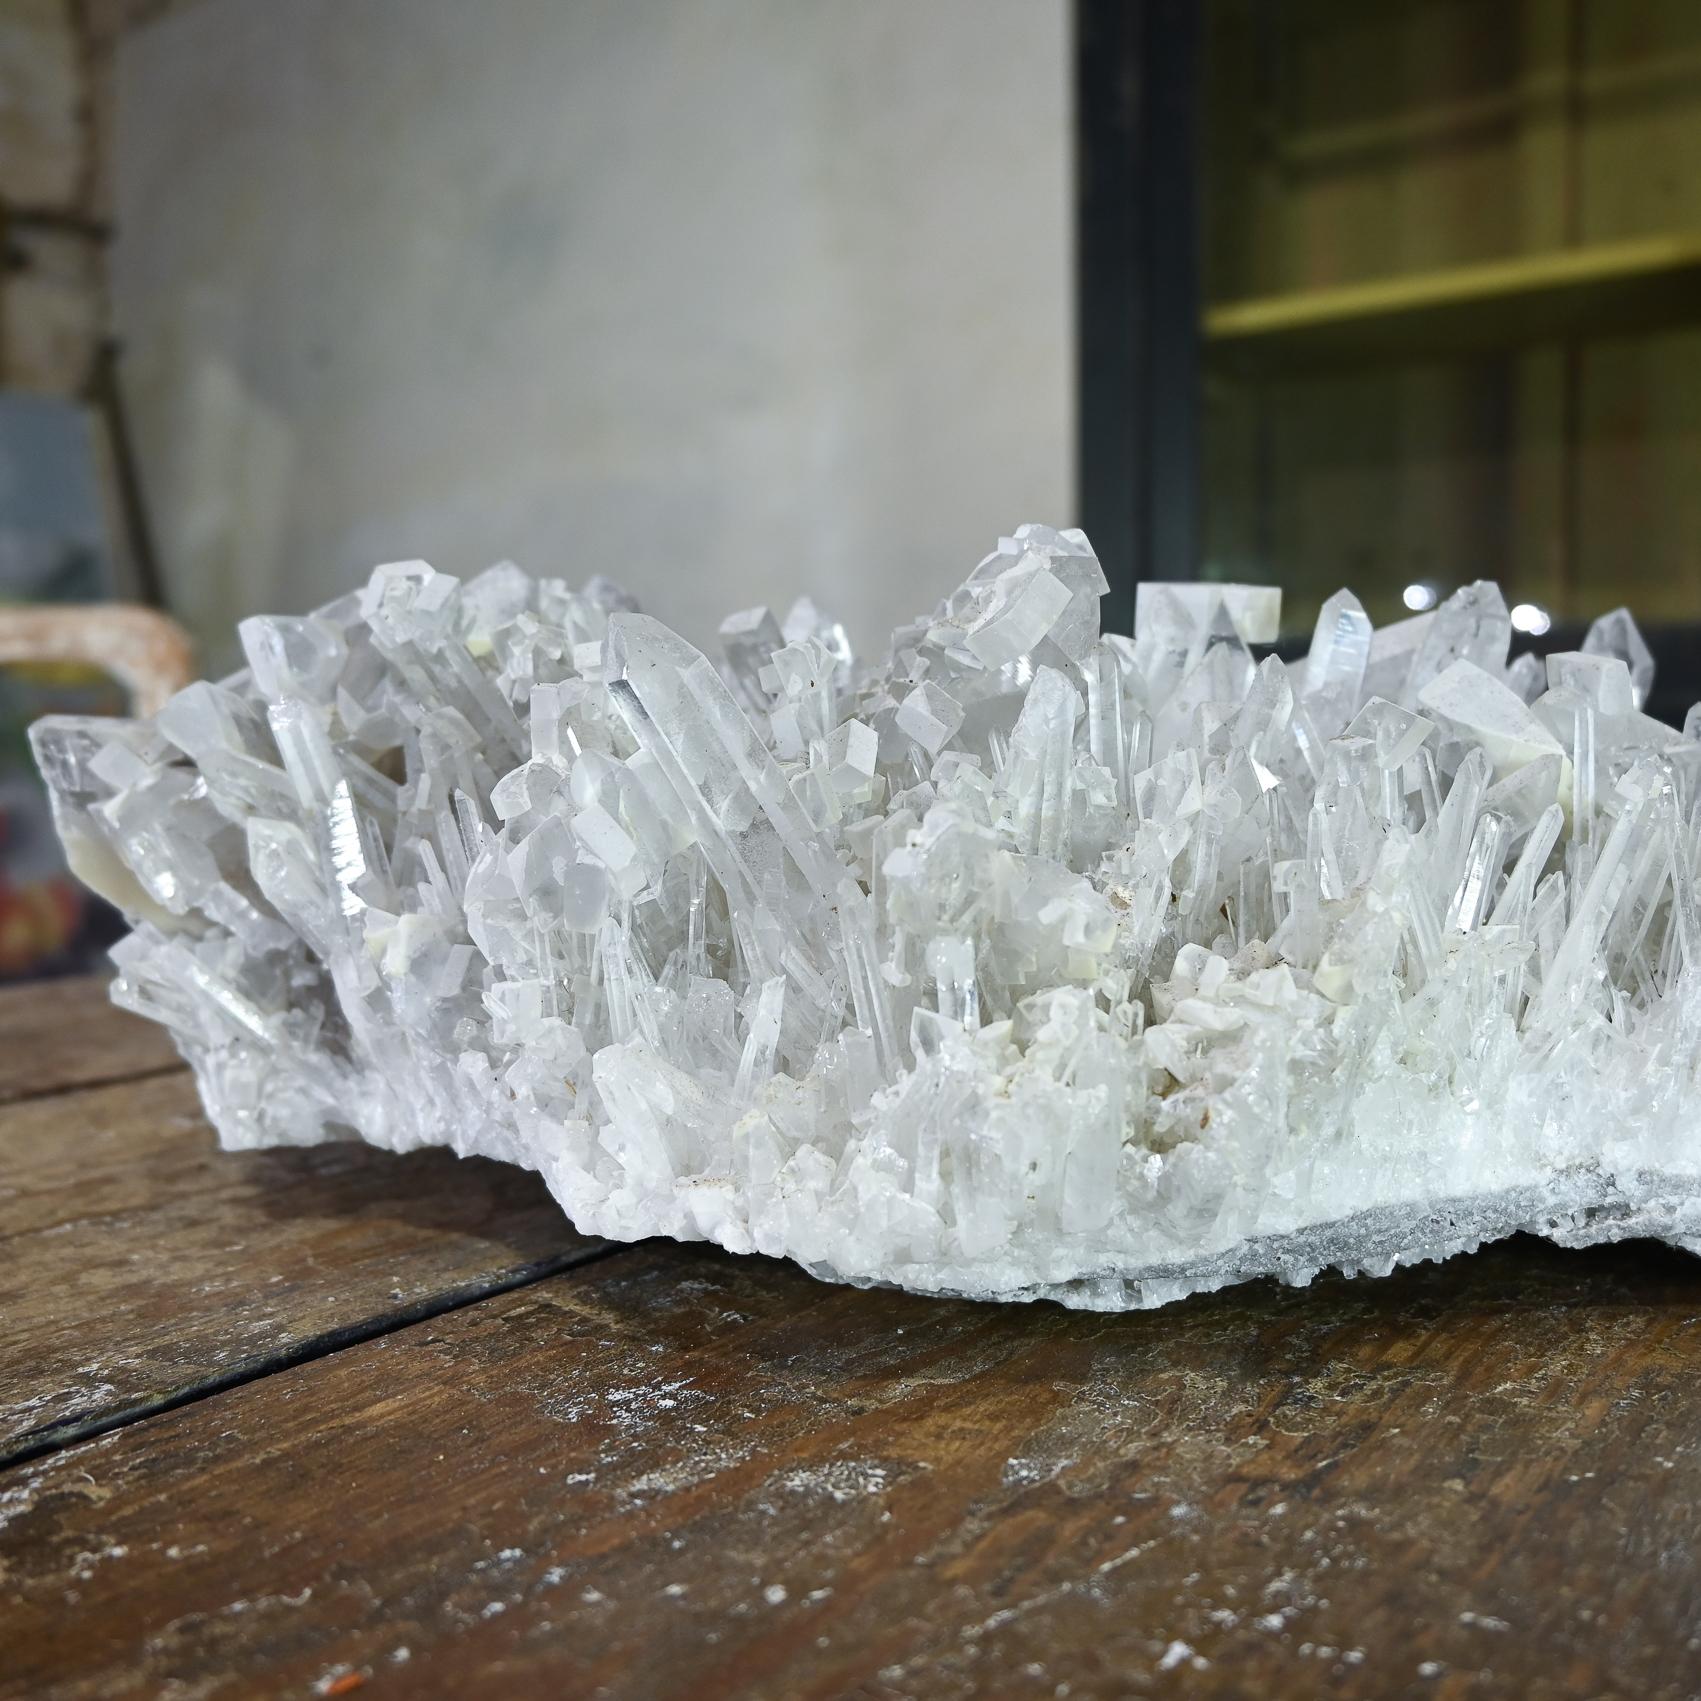 European A Large Needle Quartz Crystal Cluster Geological Specimen For Sale